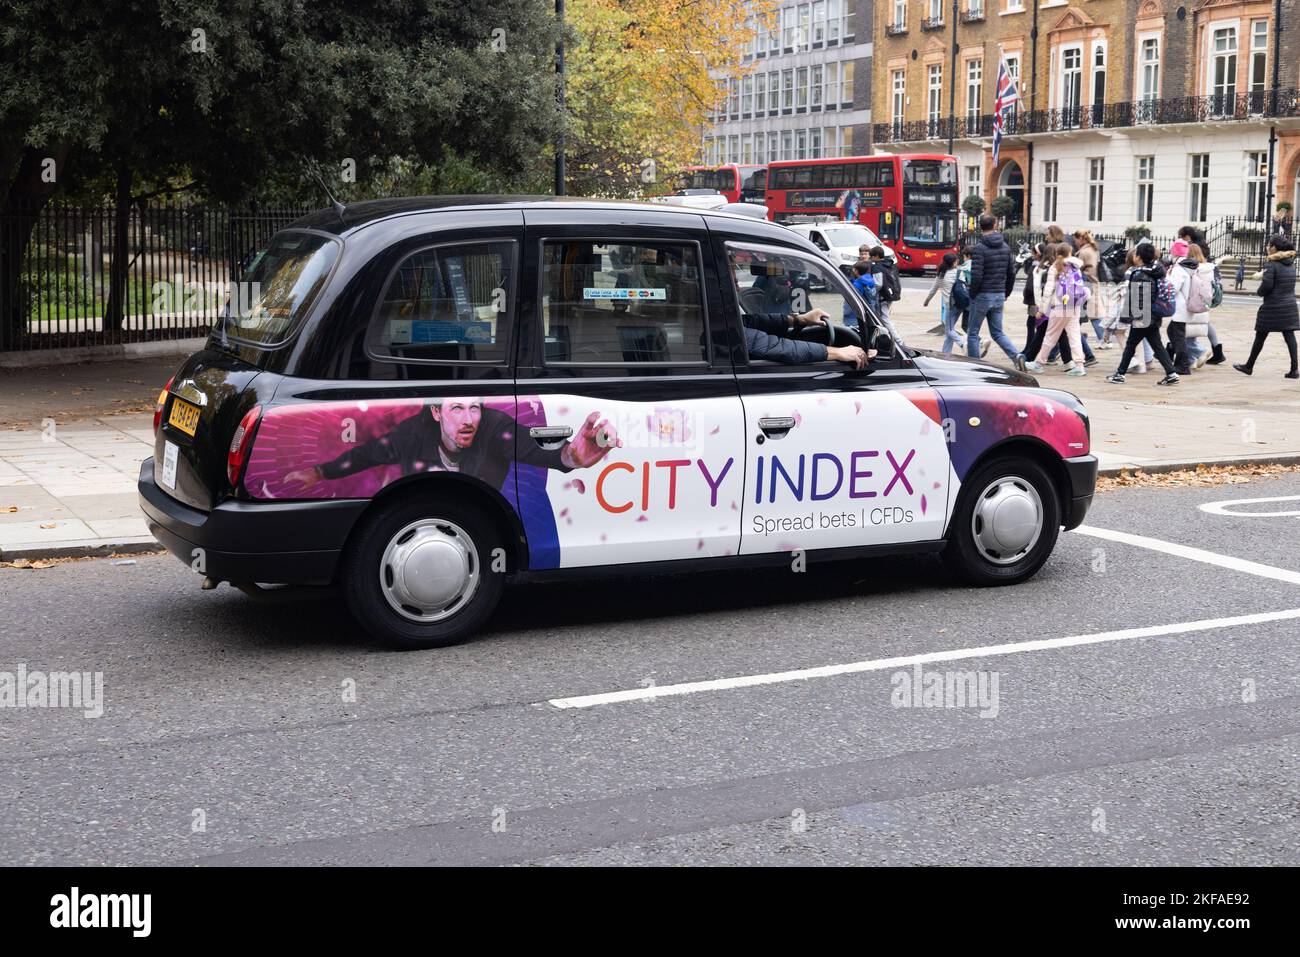 London Taxi Advertising; London Black Cab con City Index Advertising al suo fianco, per una società finanziaria di scommesse sparse, Londra UK Foto Stock